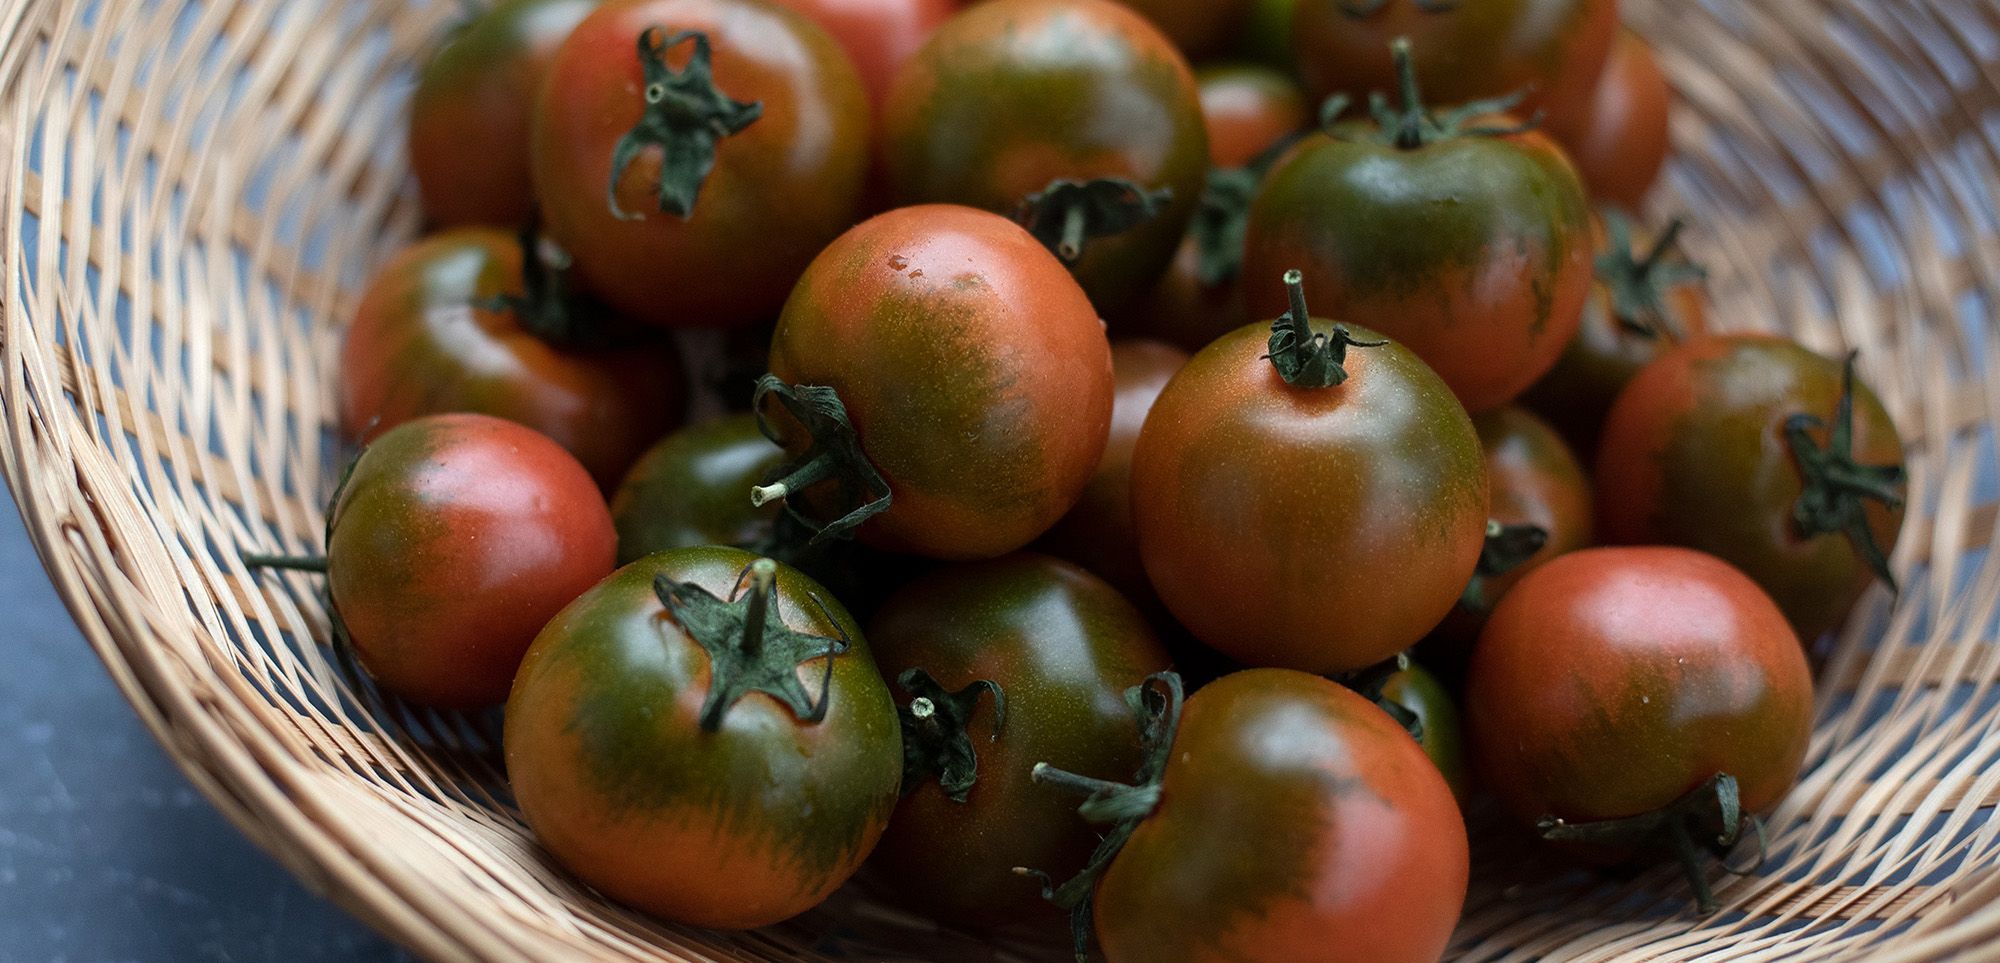 Tomatoes May